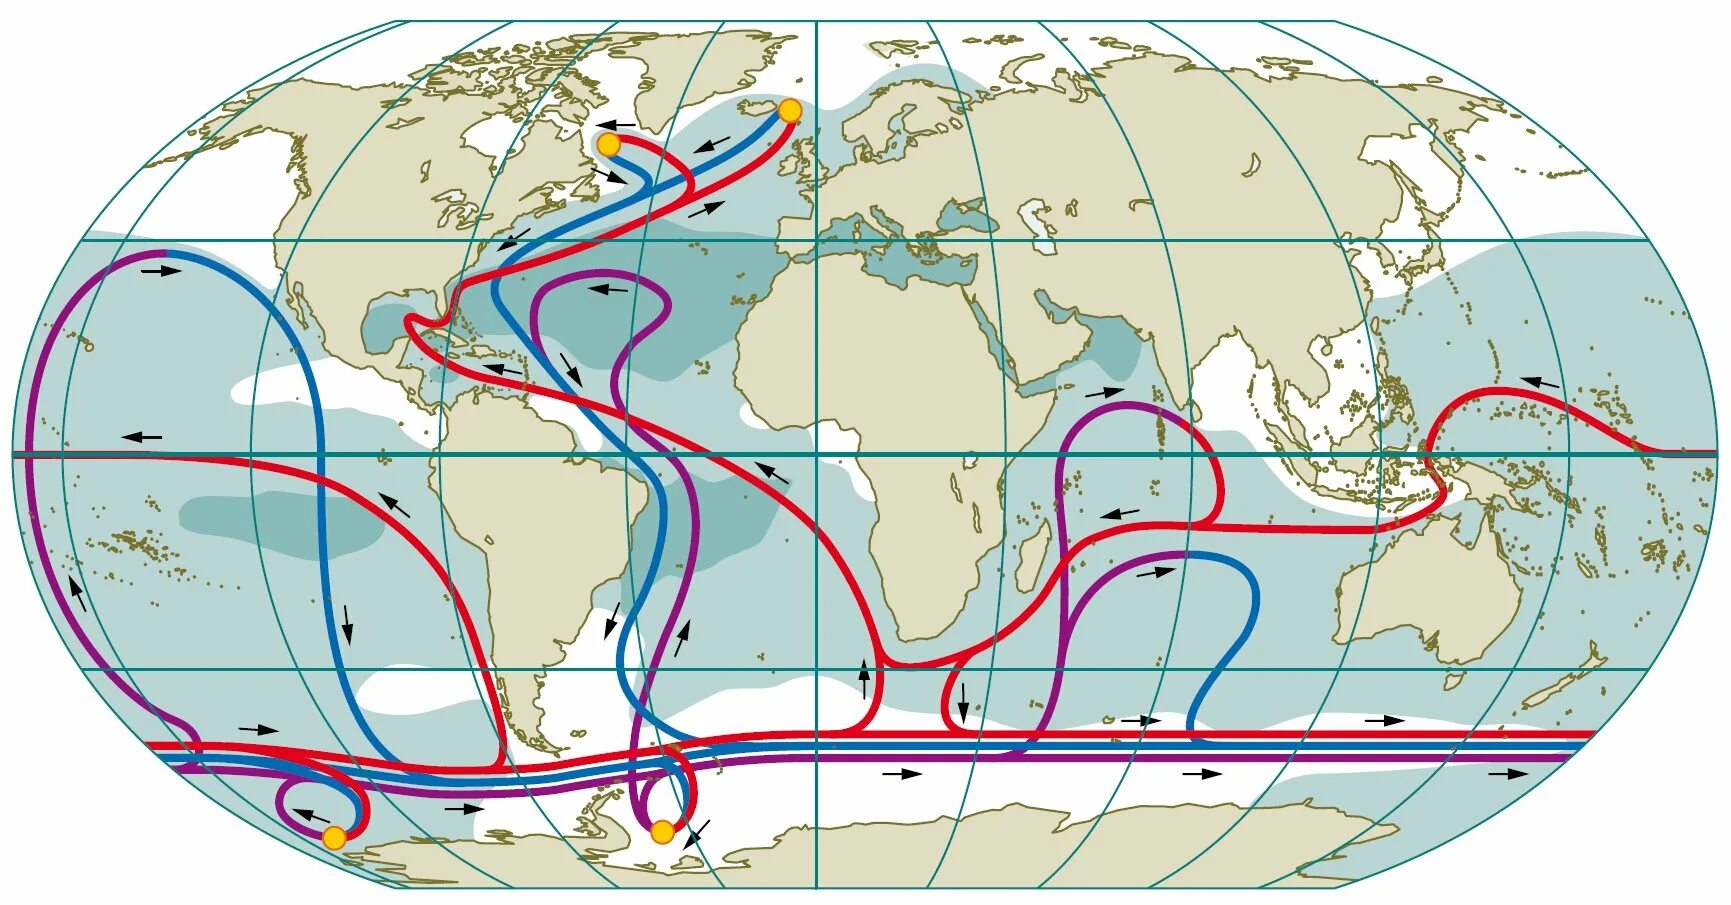 Циркуляция вод в мировом океане течения. Течение Гольфстрим на карте мирового океана. Циркуляция Гольфстрима. Холодные морские течения. Направление ветровых течений